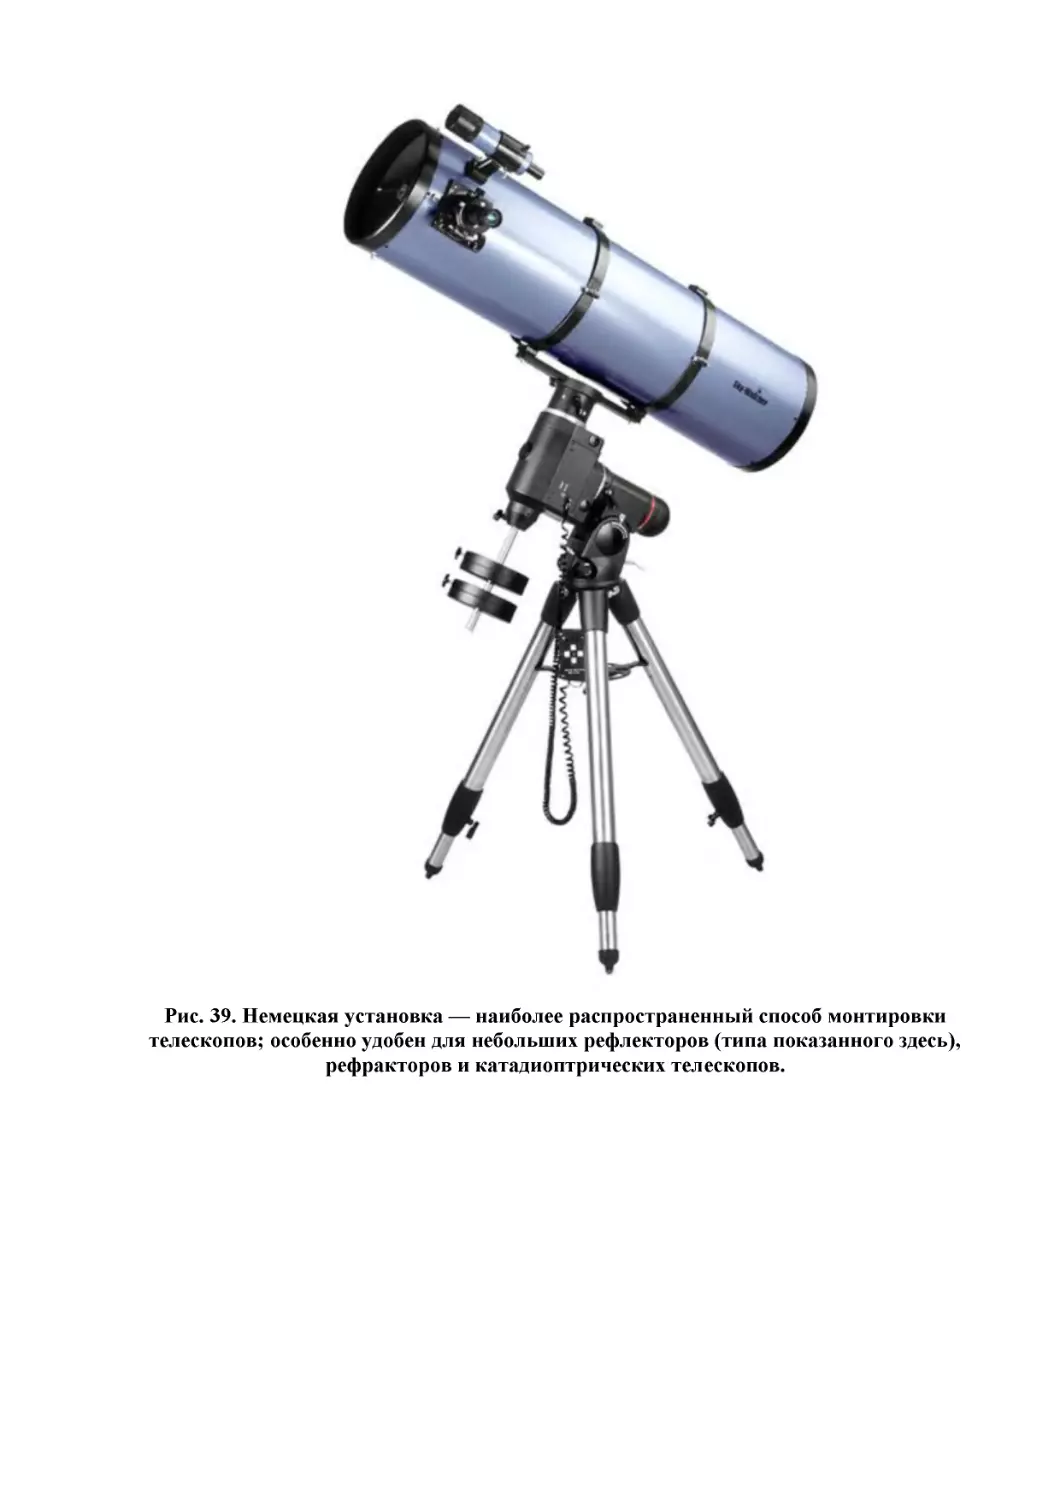 Рис. 39. Немецкая установка — наиболее распространенный способ монтировки телескопов; особенно удобен для небольших рефлекторов (типа показанного здесь), рефракторов и катадиоптрических телескопов.